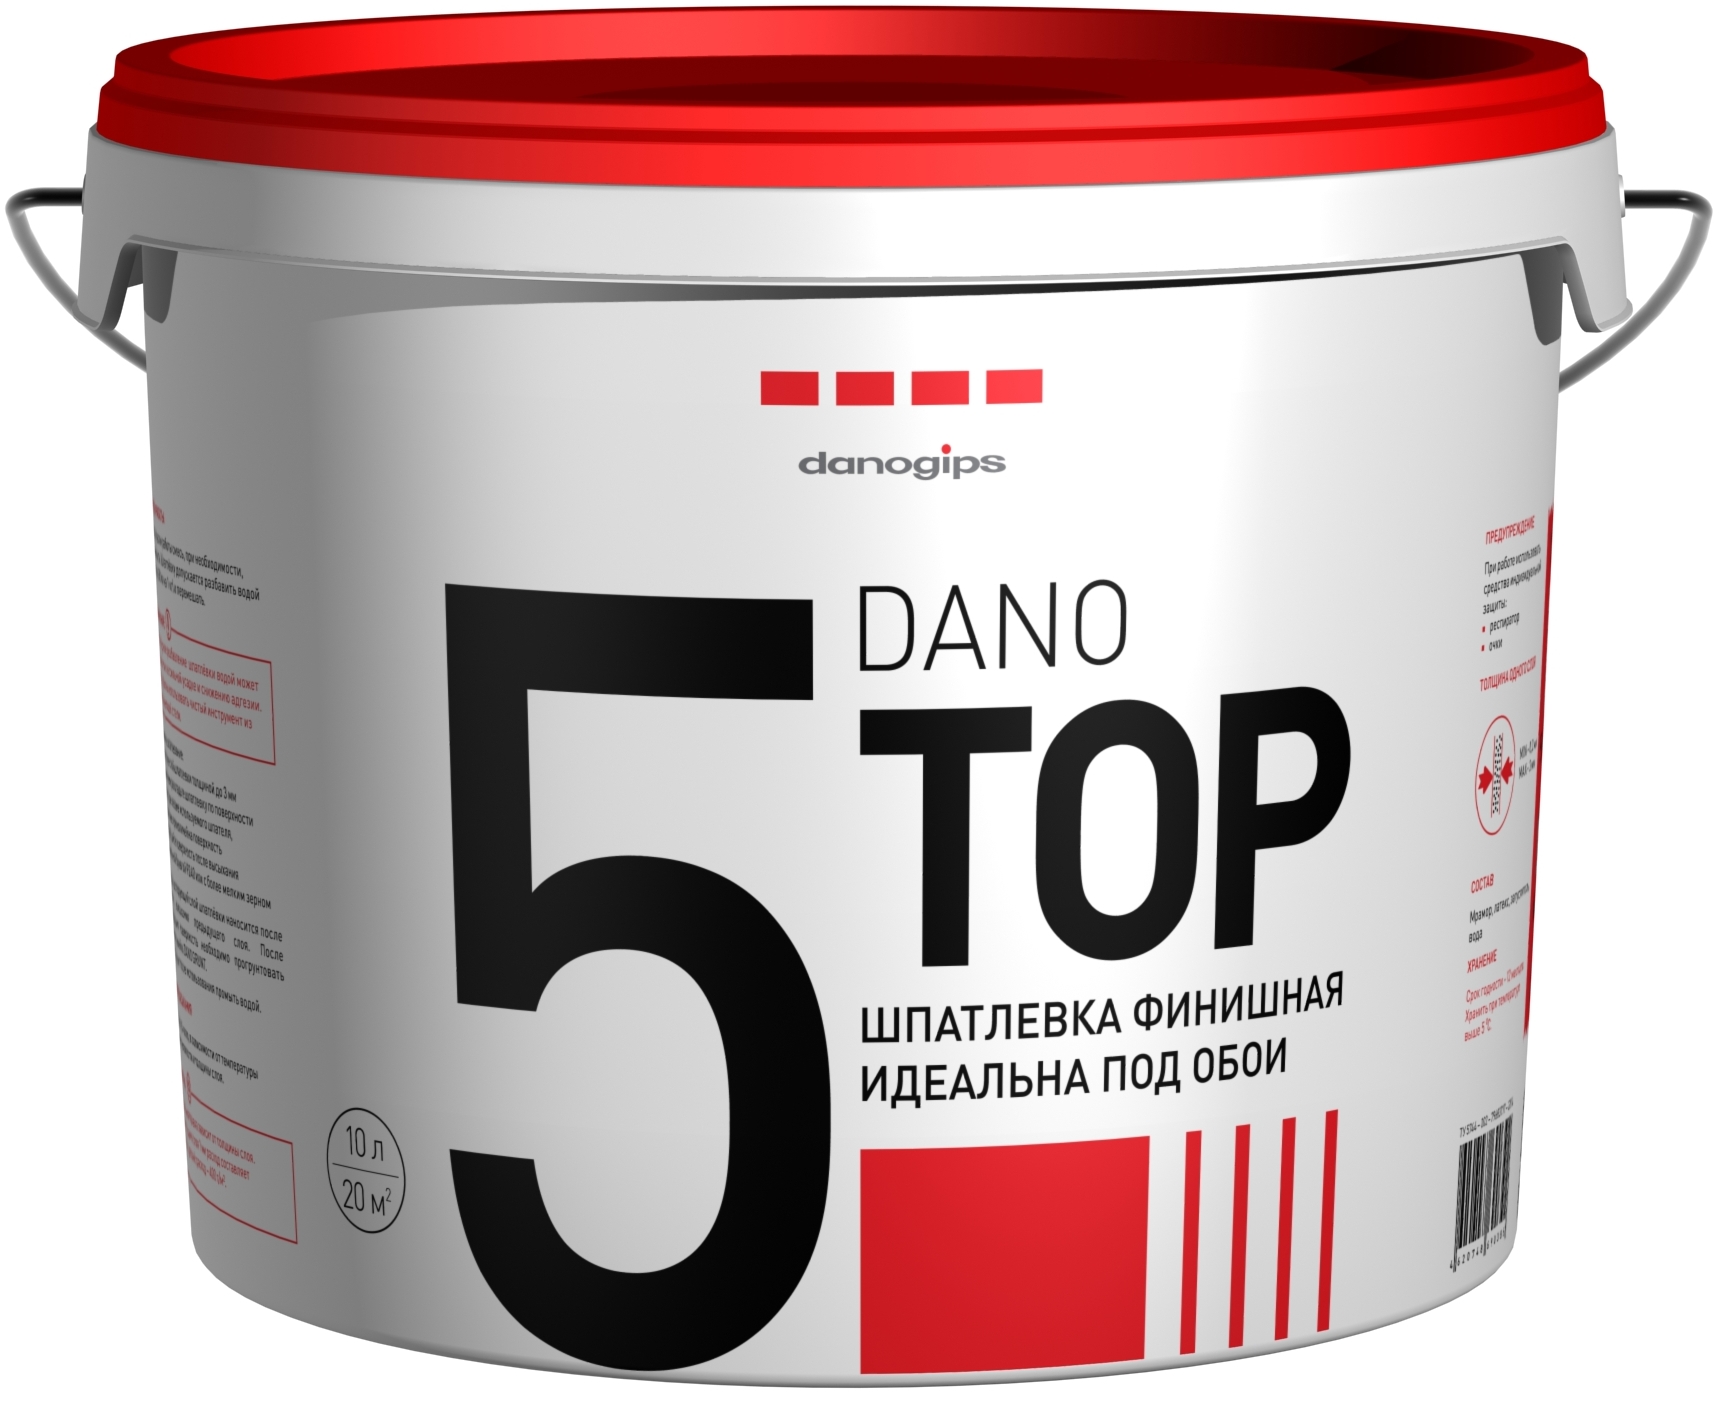 Купить Danogips Dano Top 5, 10 л